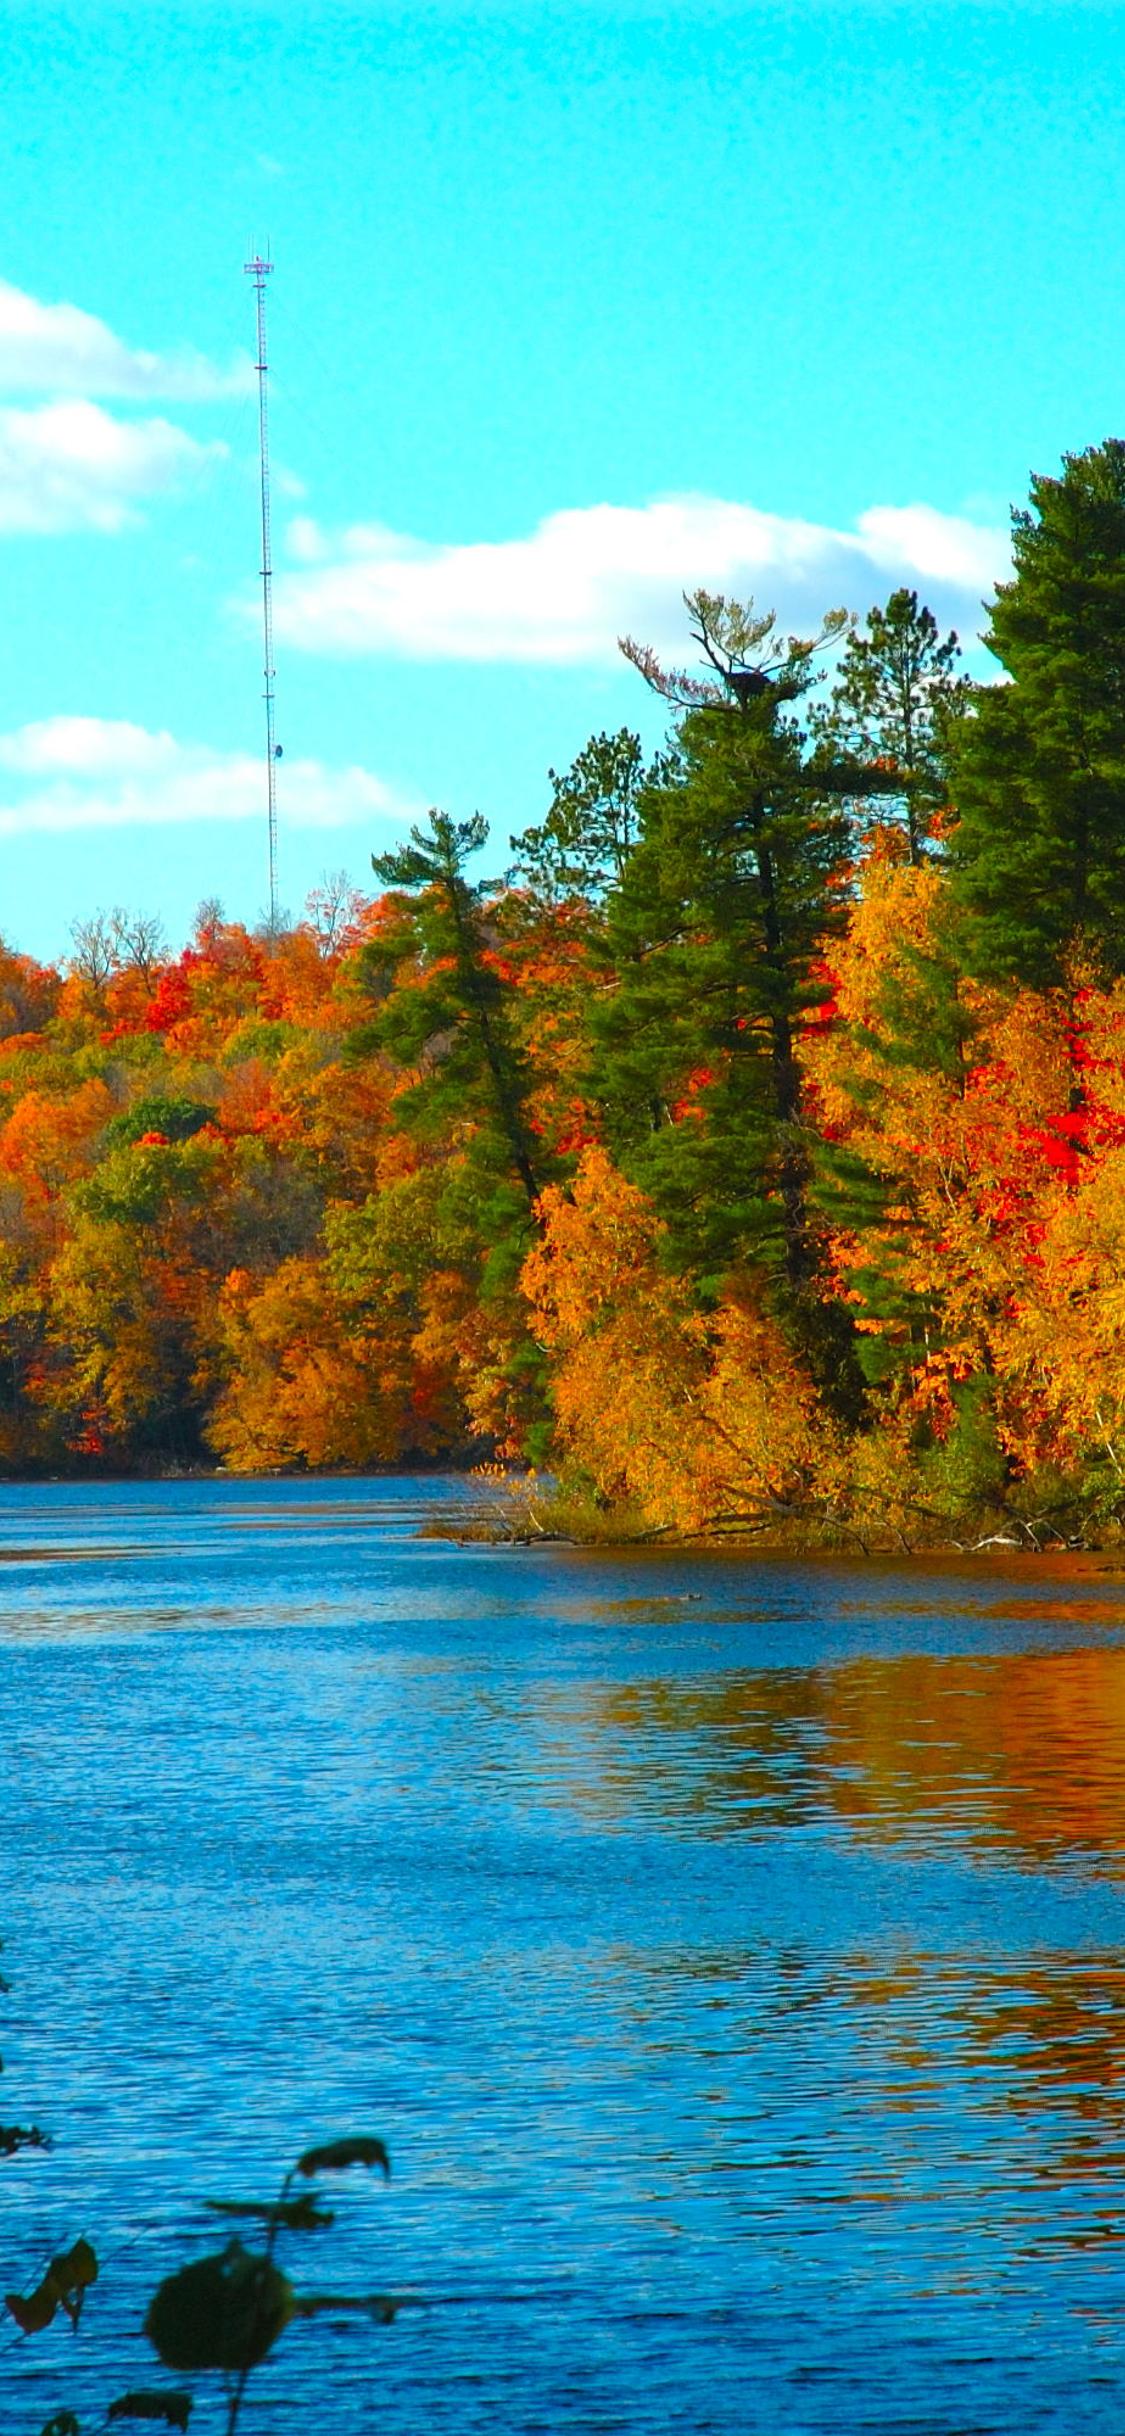 Autumn season is wonderful trees and lake